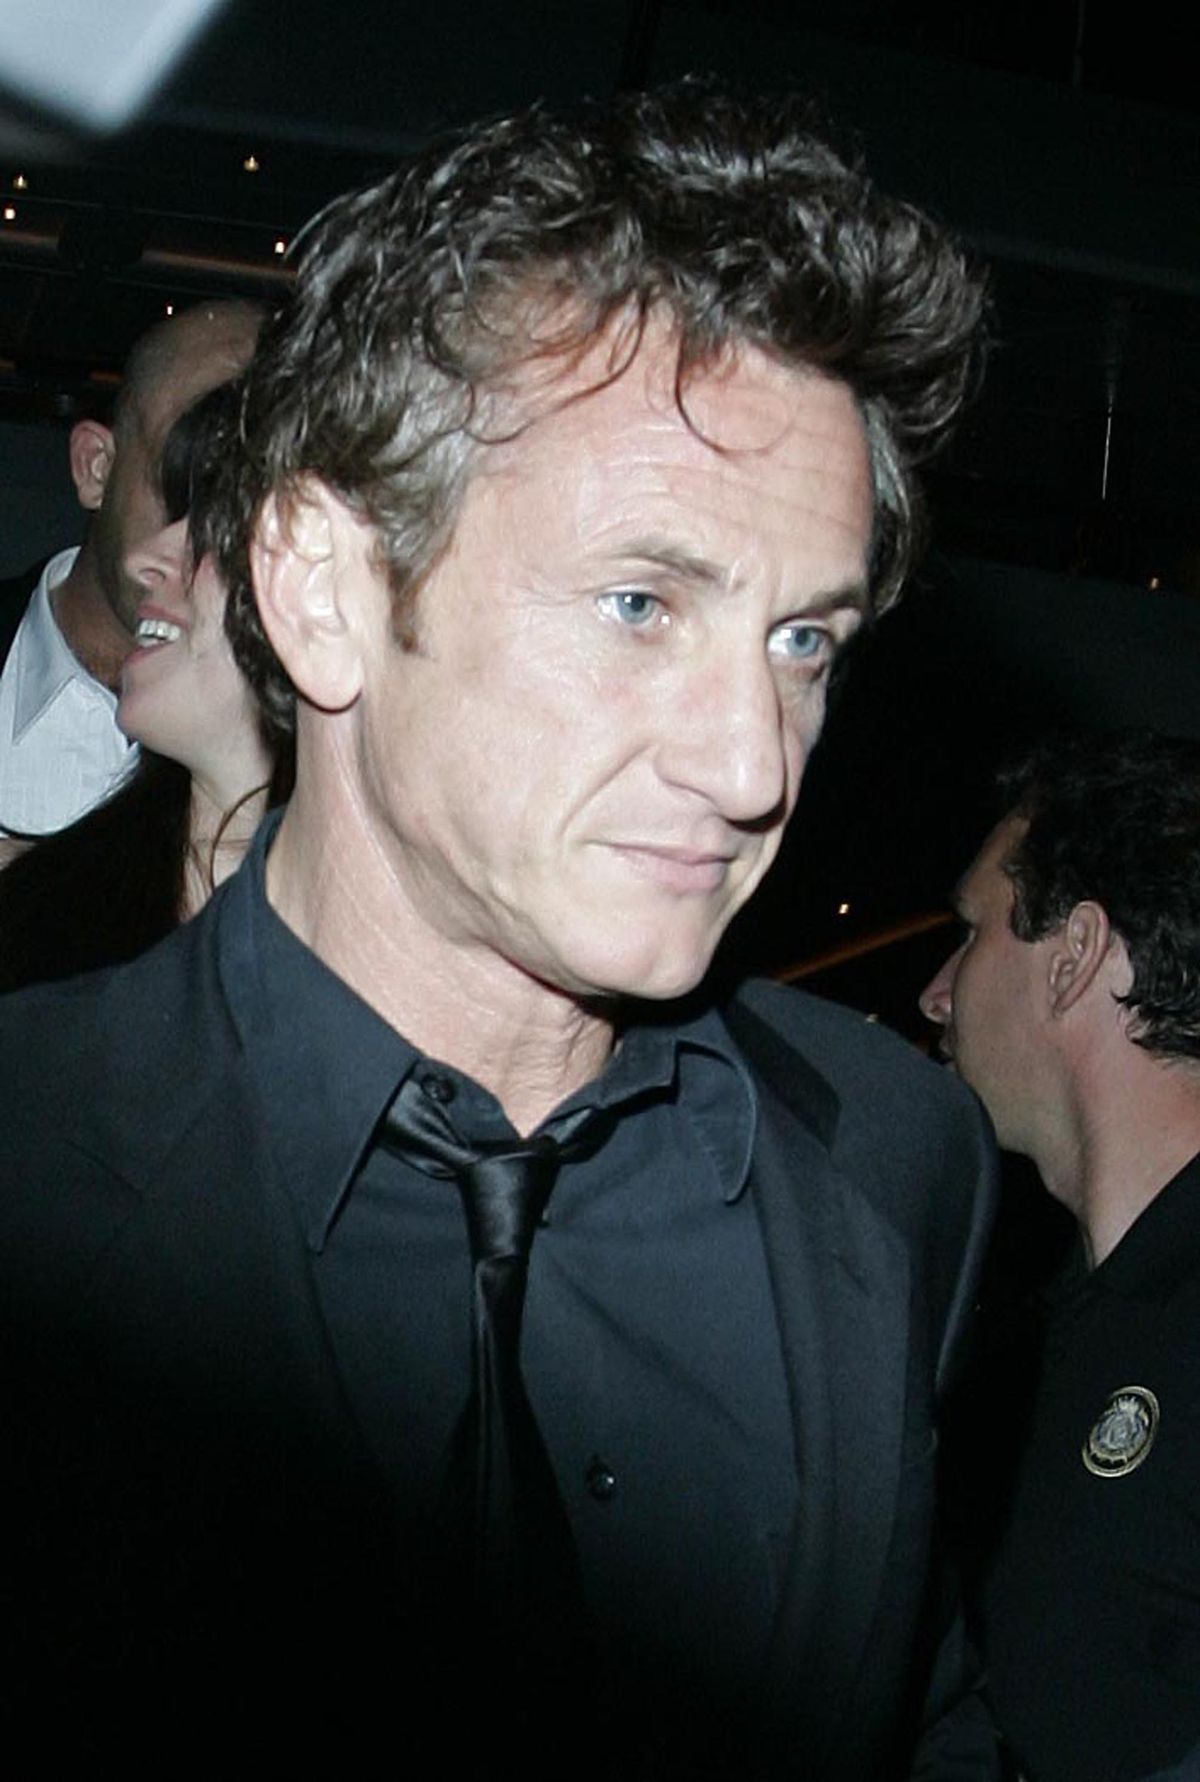 Näitleja Sean Penn on kahel korral vahistatud fotograafi ründamise eest.